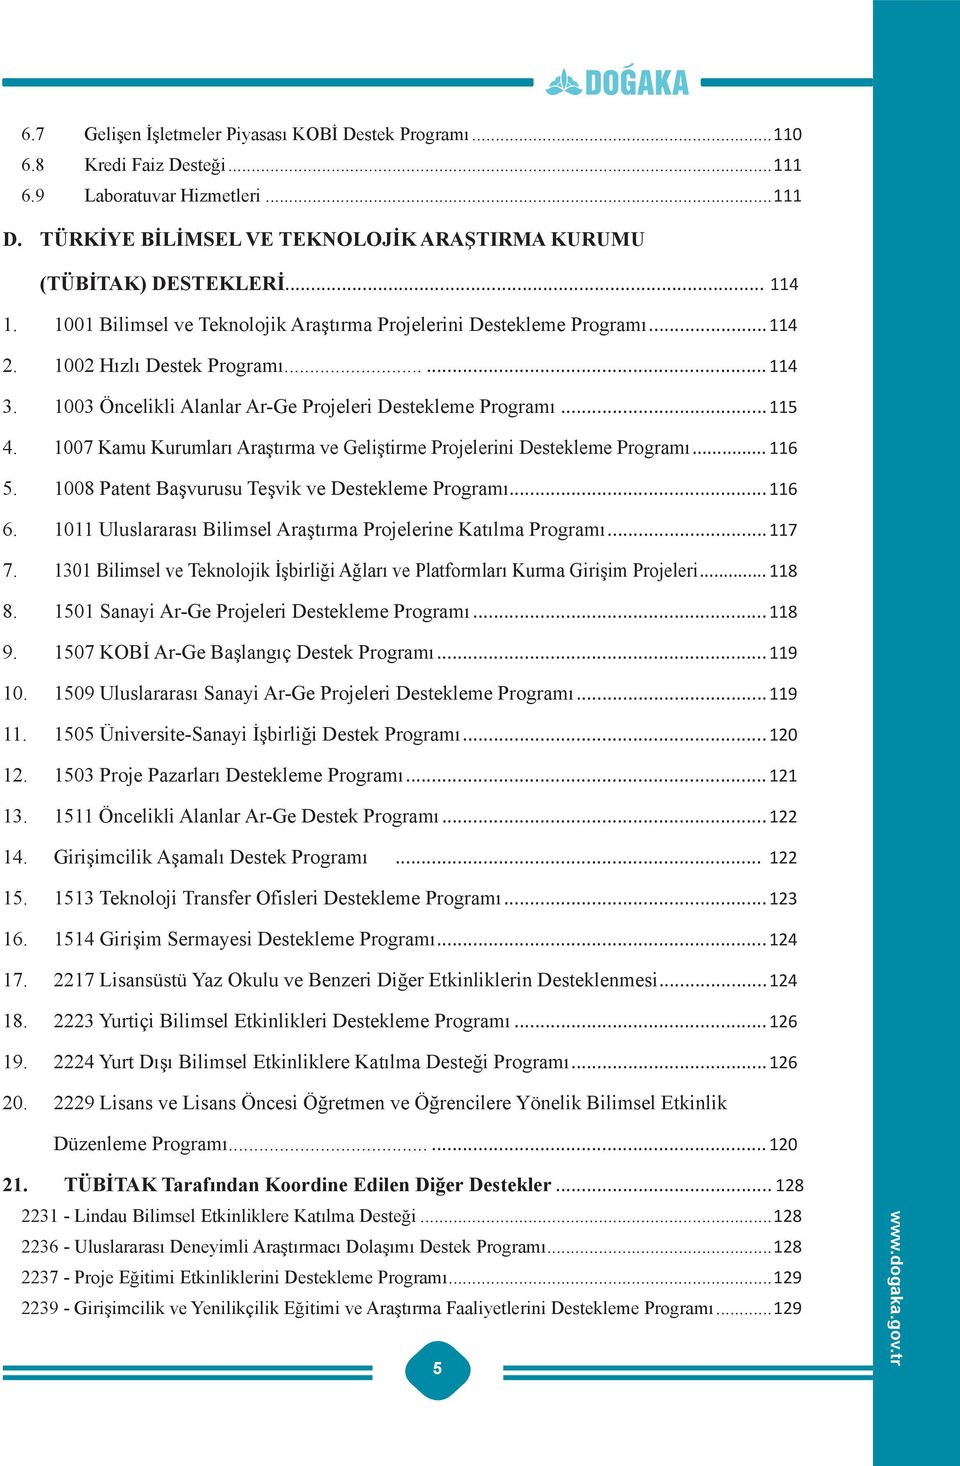 1007 Kamu Kurumları Araştırma ve Geliştirme Projelerini Destekleme Programı... 116 5. 1008 Patent Başvurusu Teşvik ve Destekleme Programı...116 6.